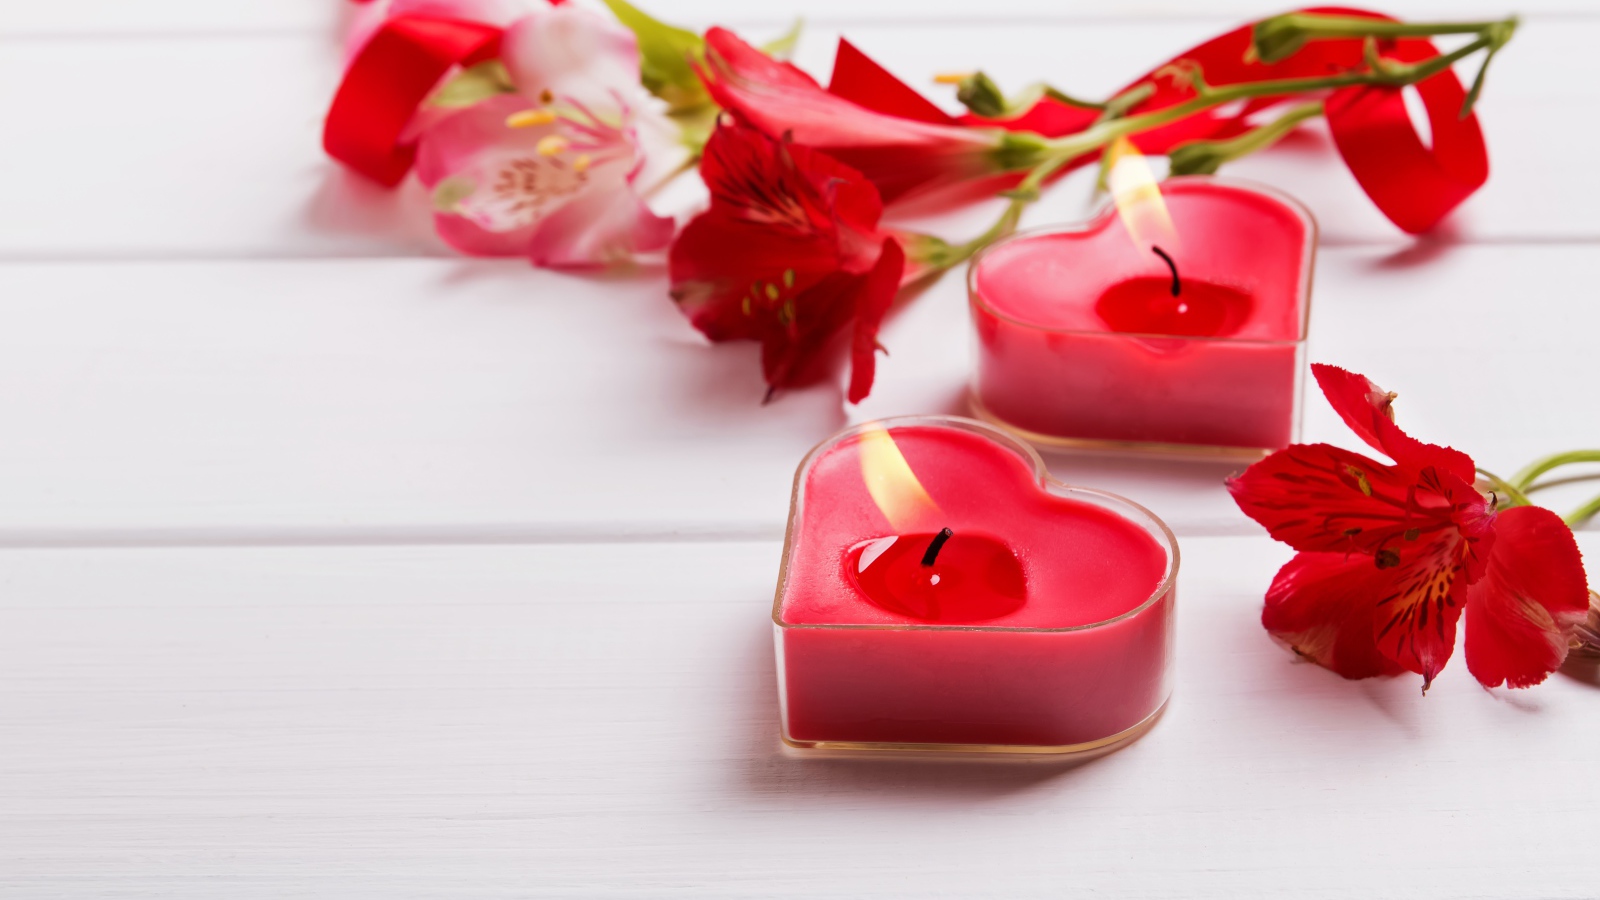 Две красные свечи в форме сердца на столе с цветами альстромерии 